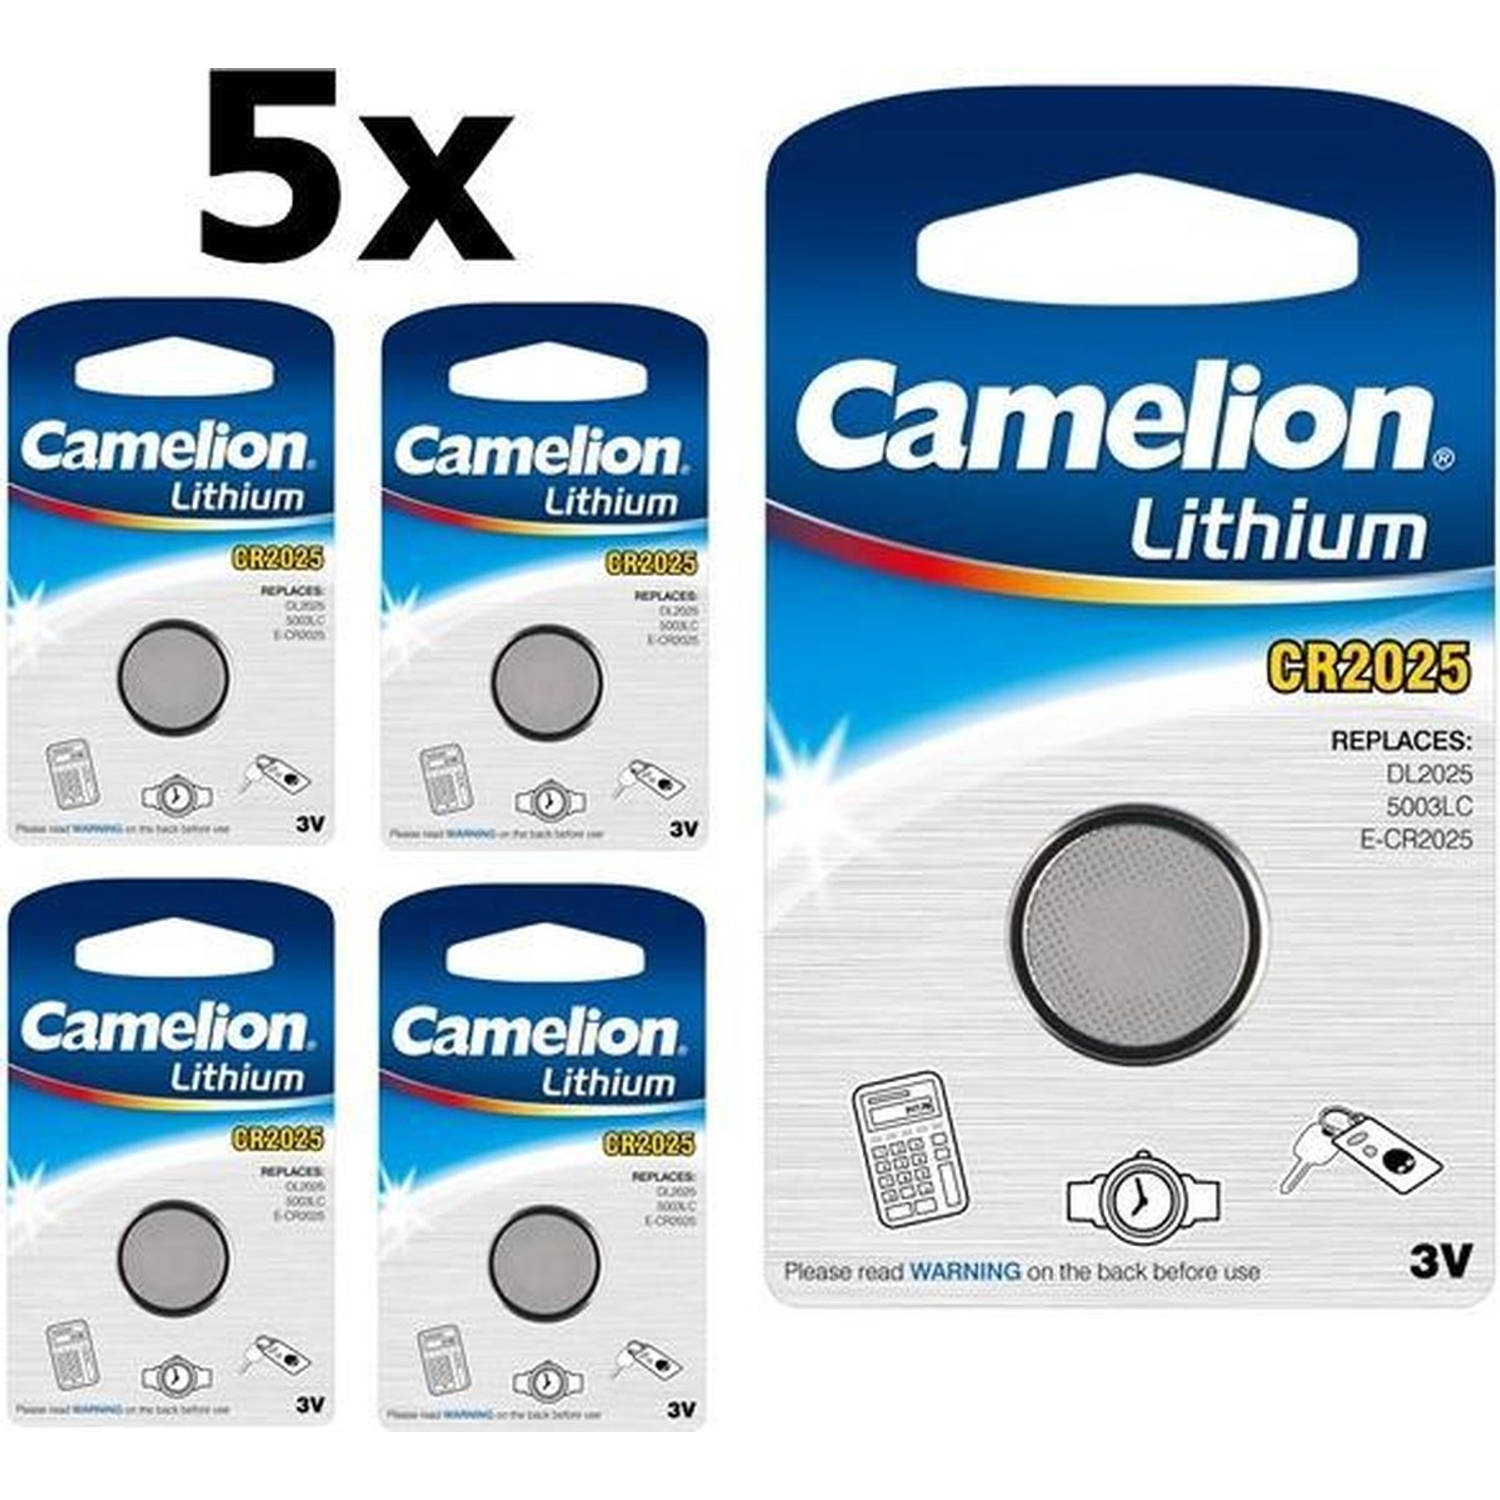 5 Stuks Camelion Cr2025 3v Lithium Knoopcel Batterij